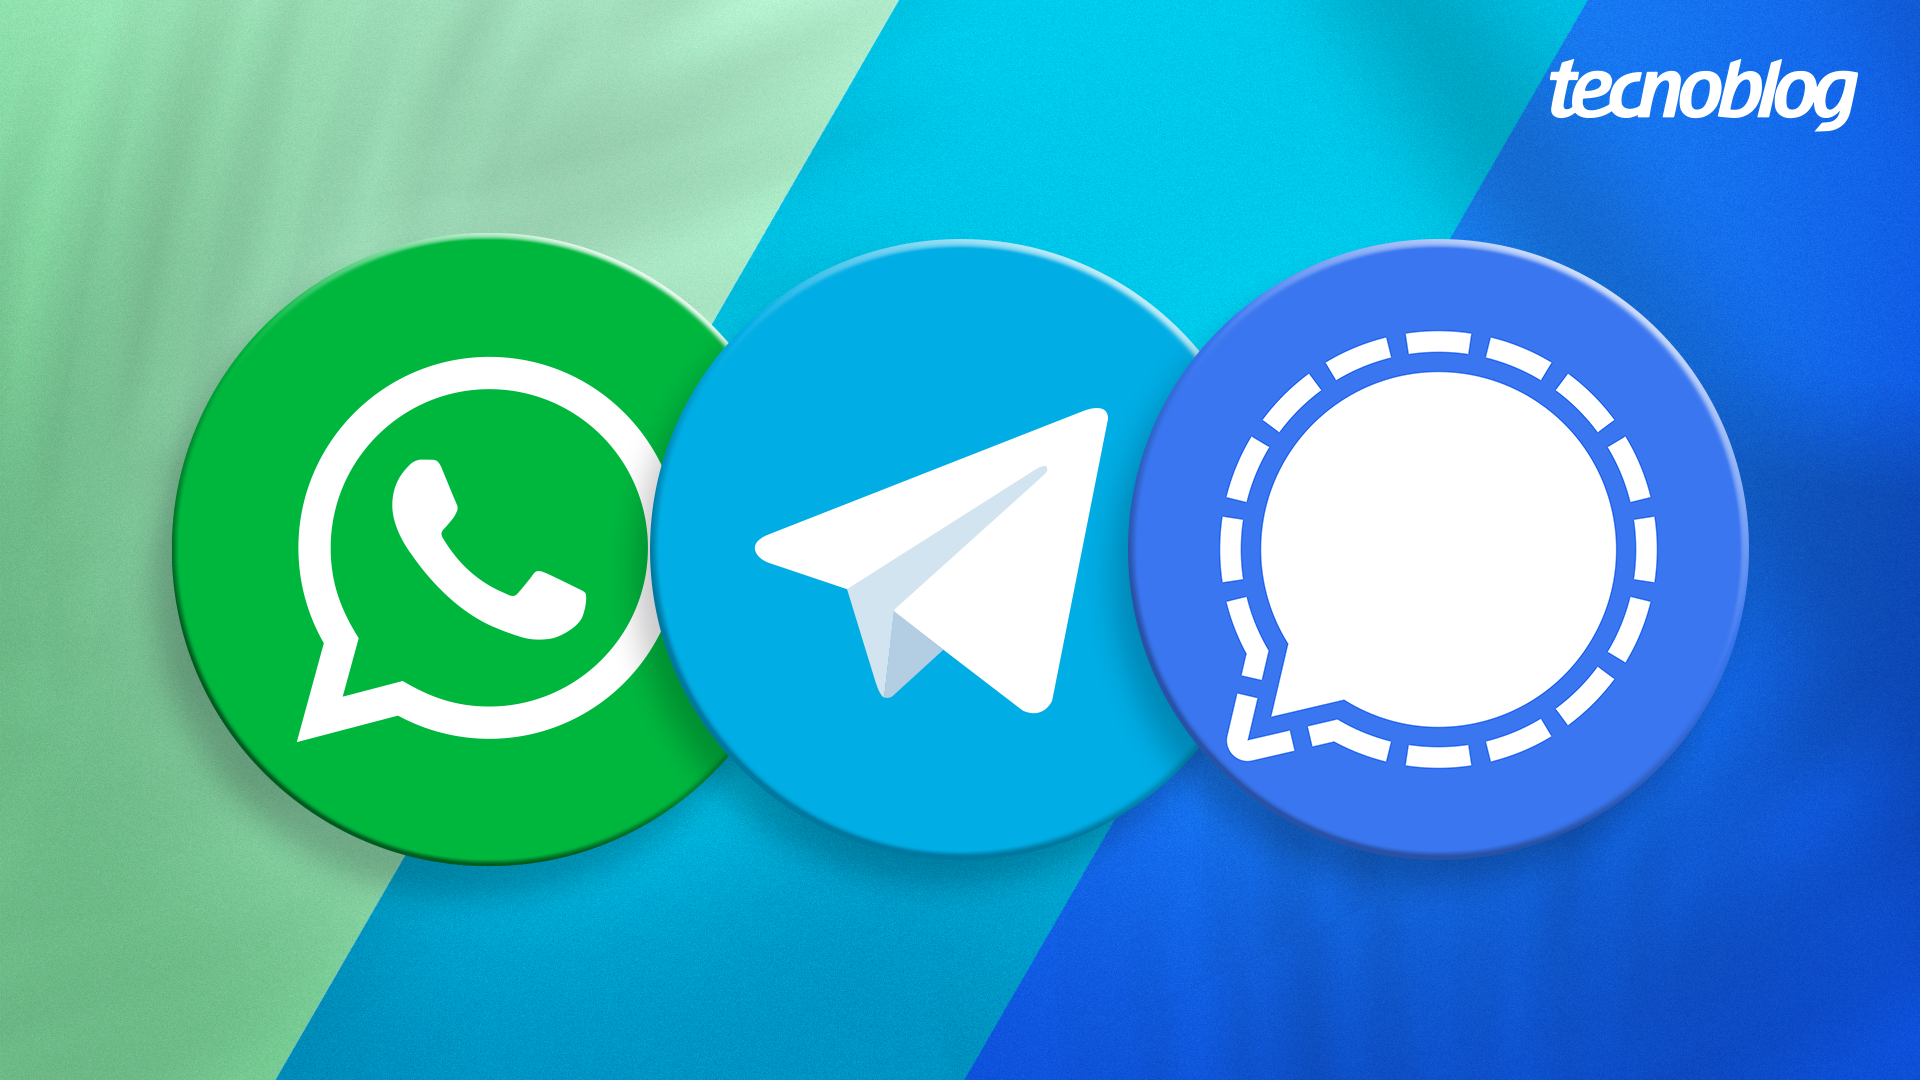 VK: rede social, chamadas – Apps no Google Play